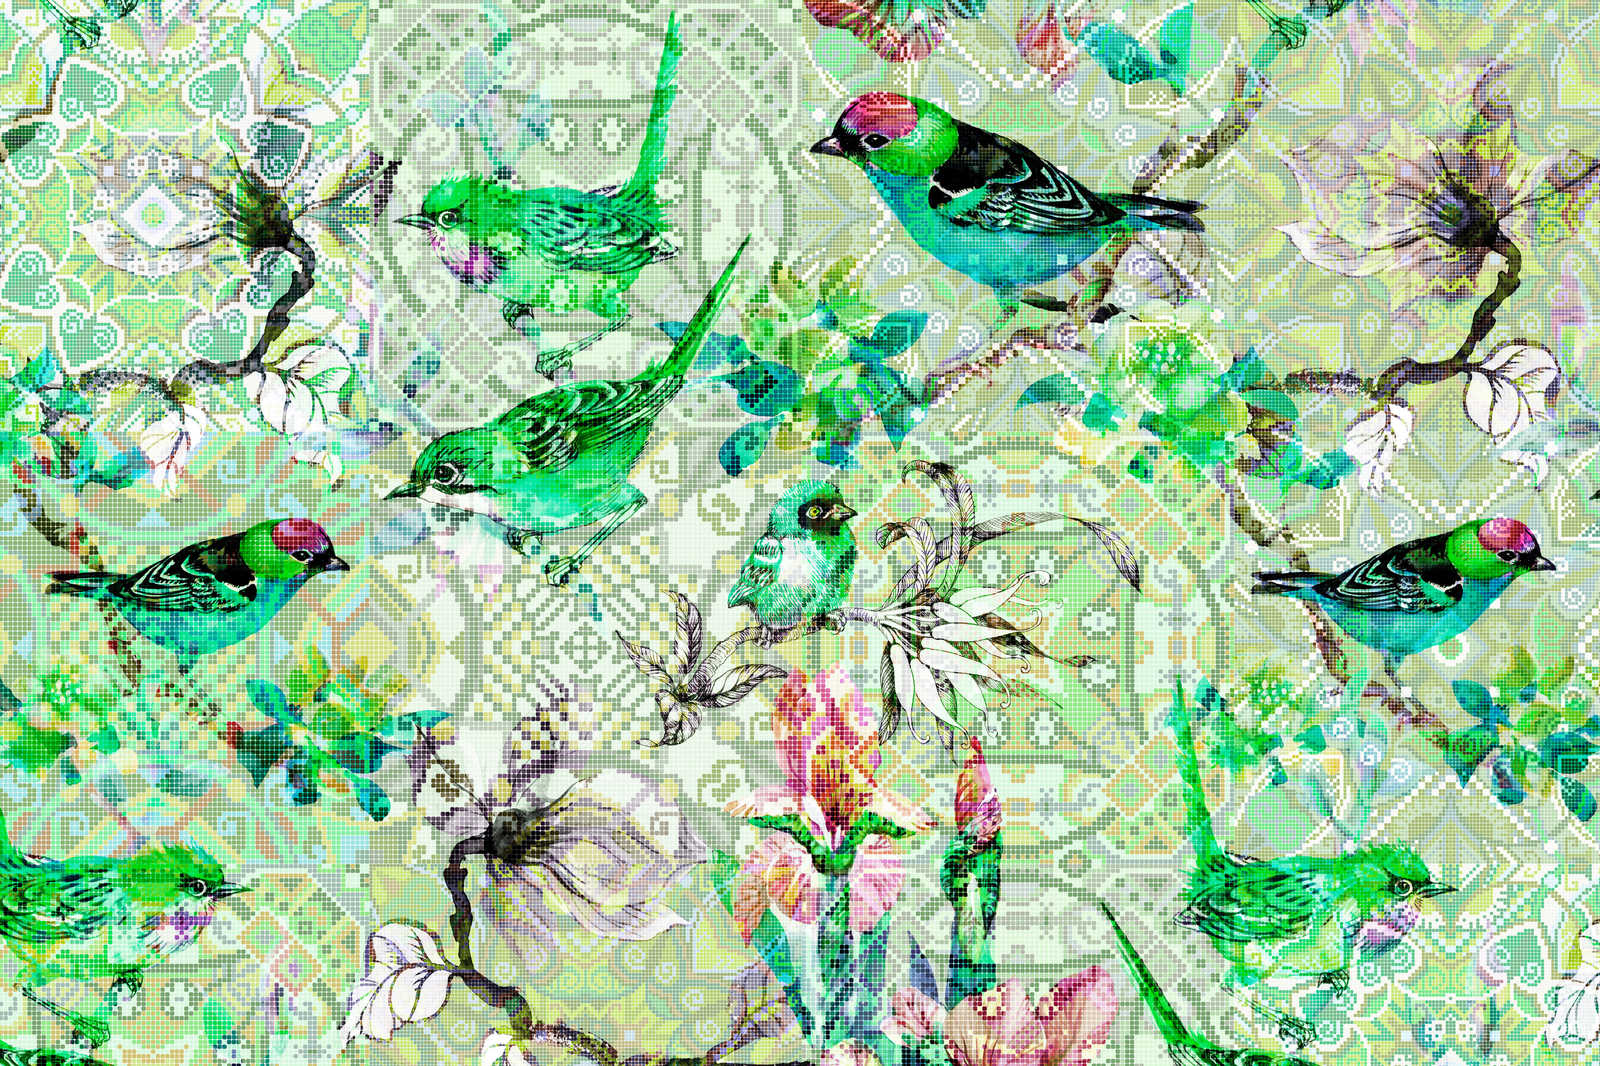             Vogel Canvas Schilderij Groen met Mozaïekpatroon - 0,90 m x 0,60 m
        